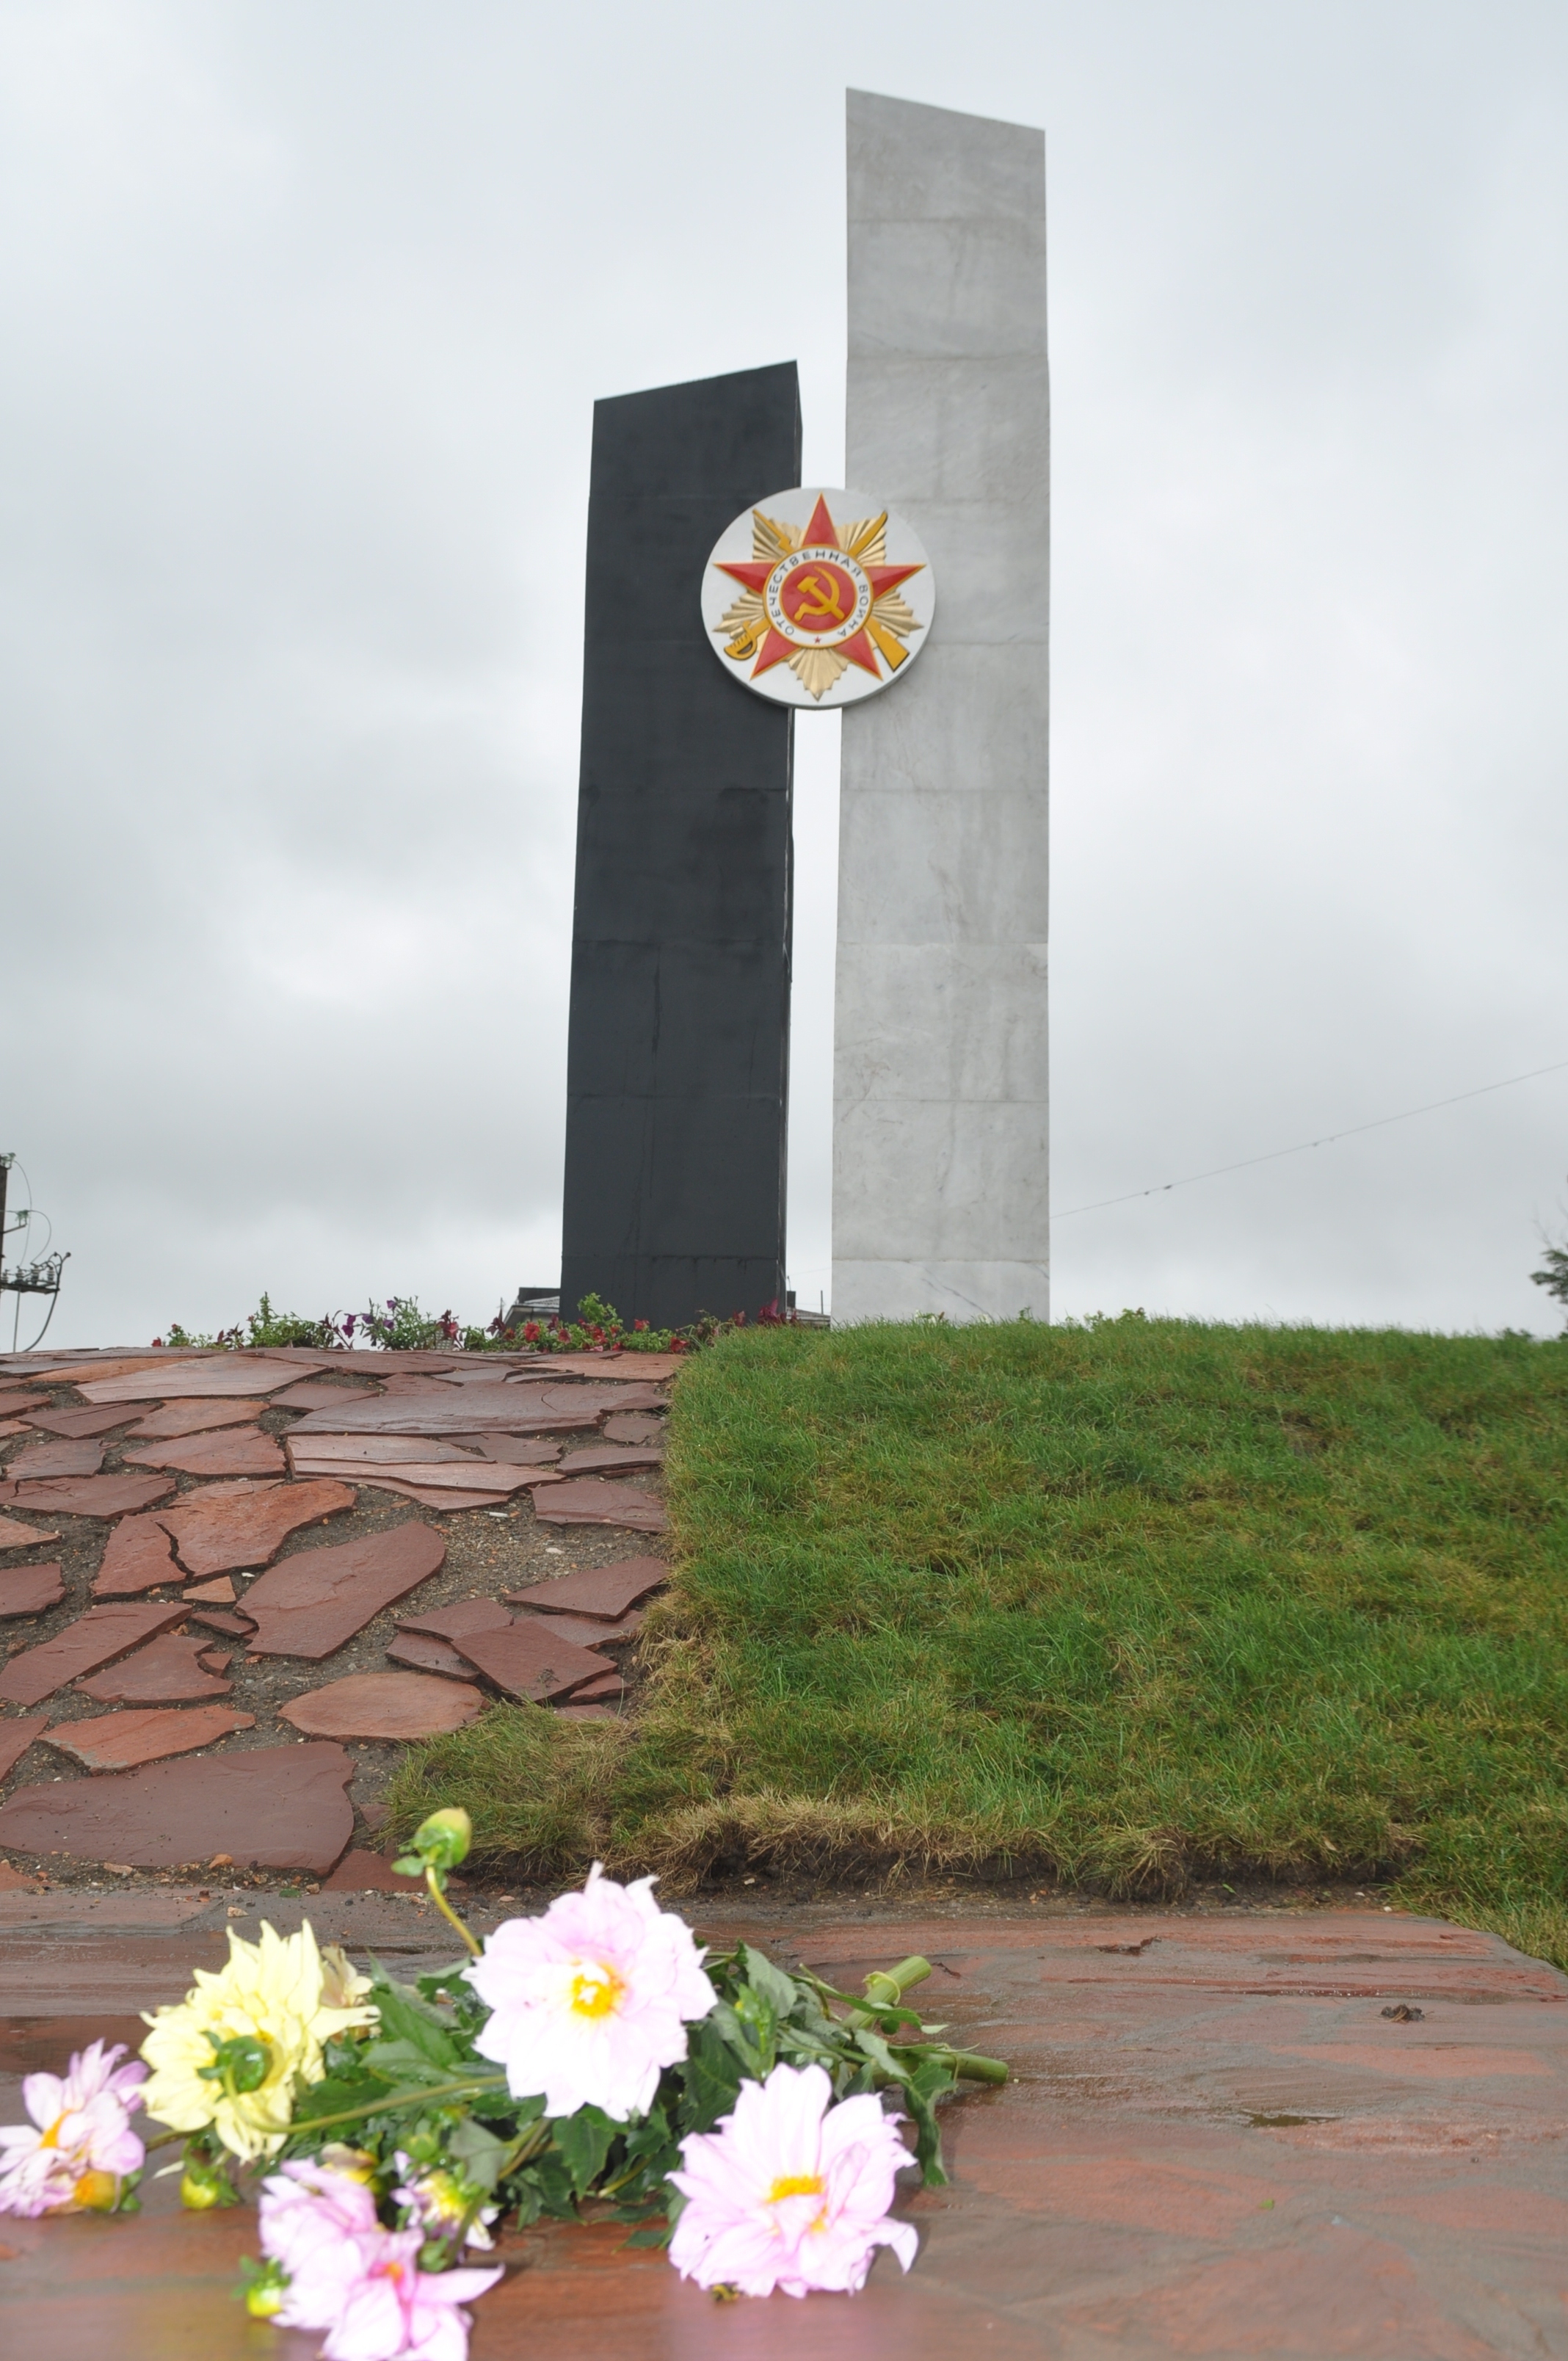 г. Караганда. Памятник Победы на площади Независимости, открытый в 2014 году.